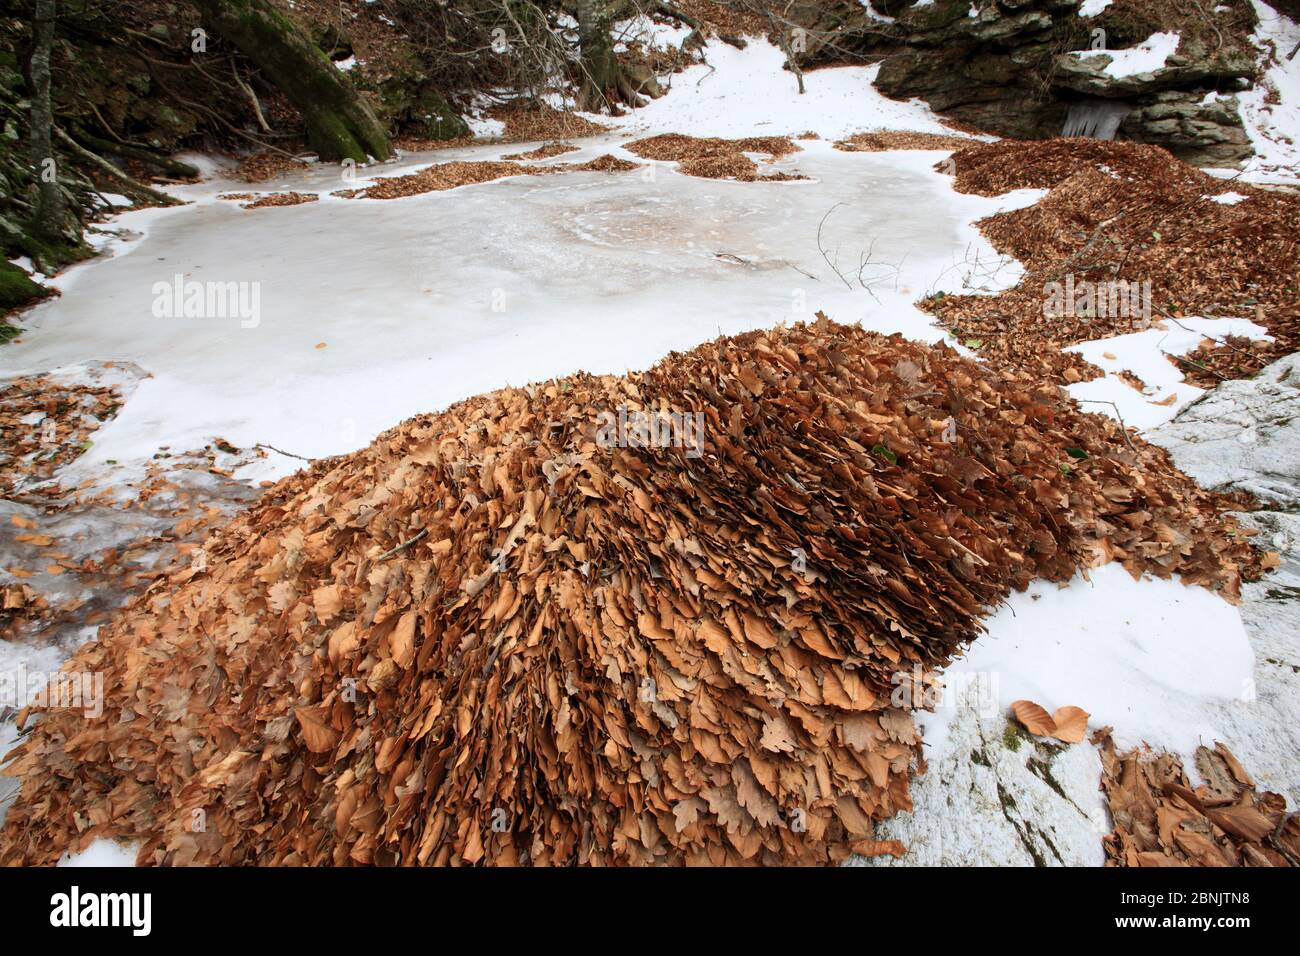 Feuilles de hêtre européen (Fagus sylvatica) dans la rivière Massane, montagnes Alberes, Pyrénées, France, février. Banque D'Images